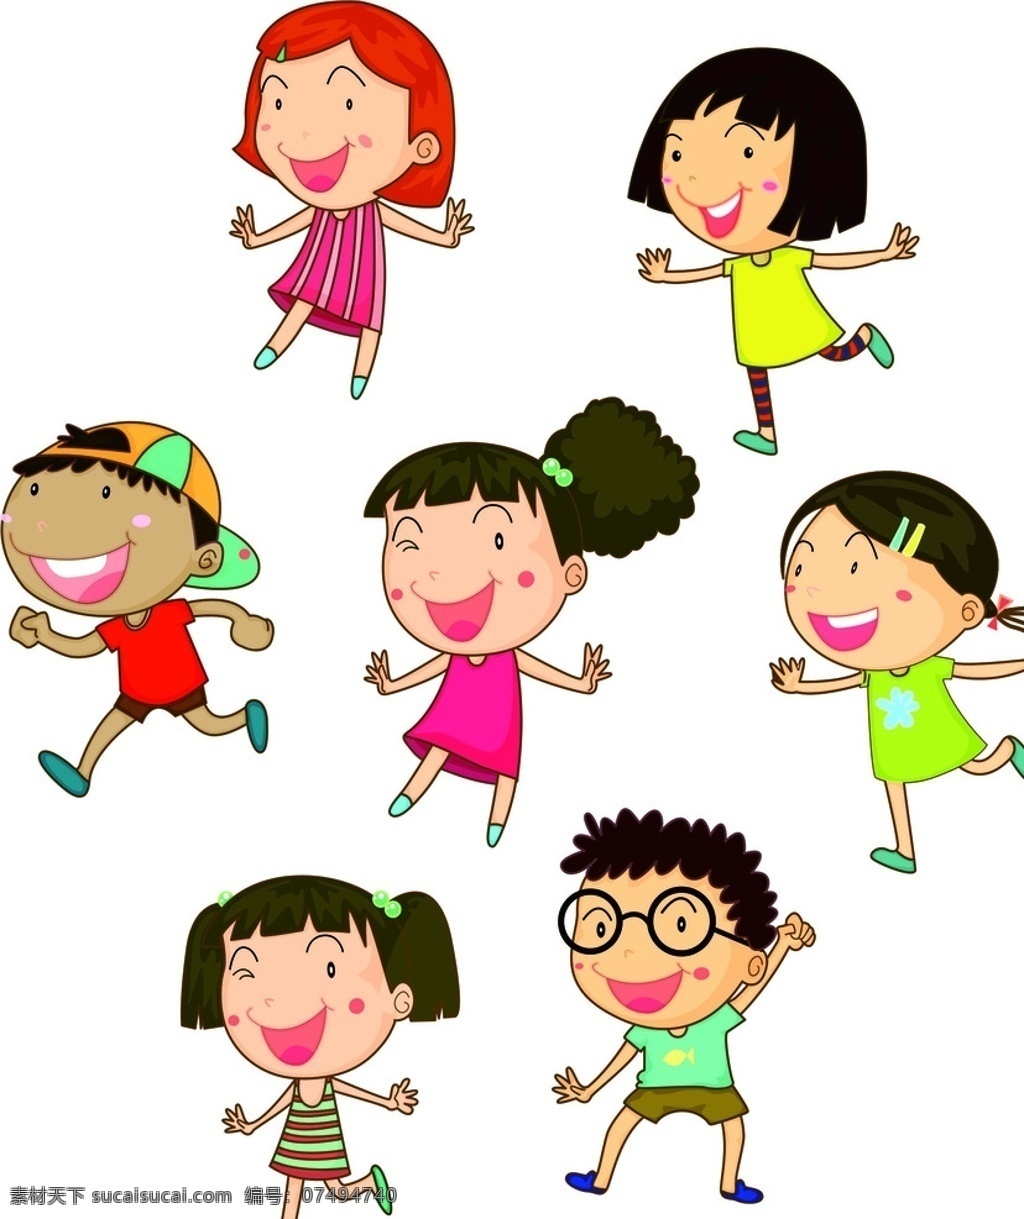 卡通 小人 矢量图 卡通小人 游戏小人 团队 团体 创意 眼镜小人 扎辫子的小人 童年 动漫动画 动漫人物